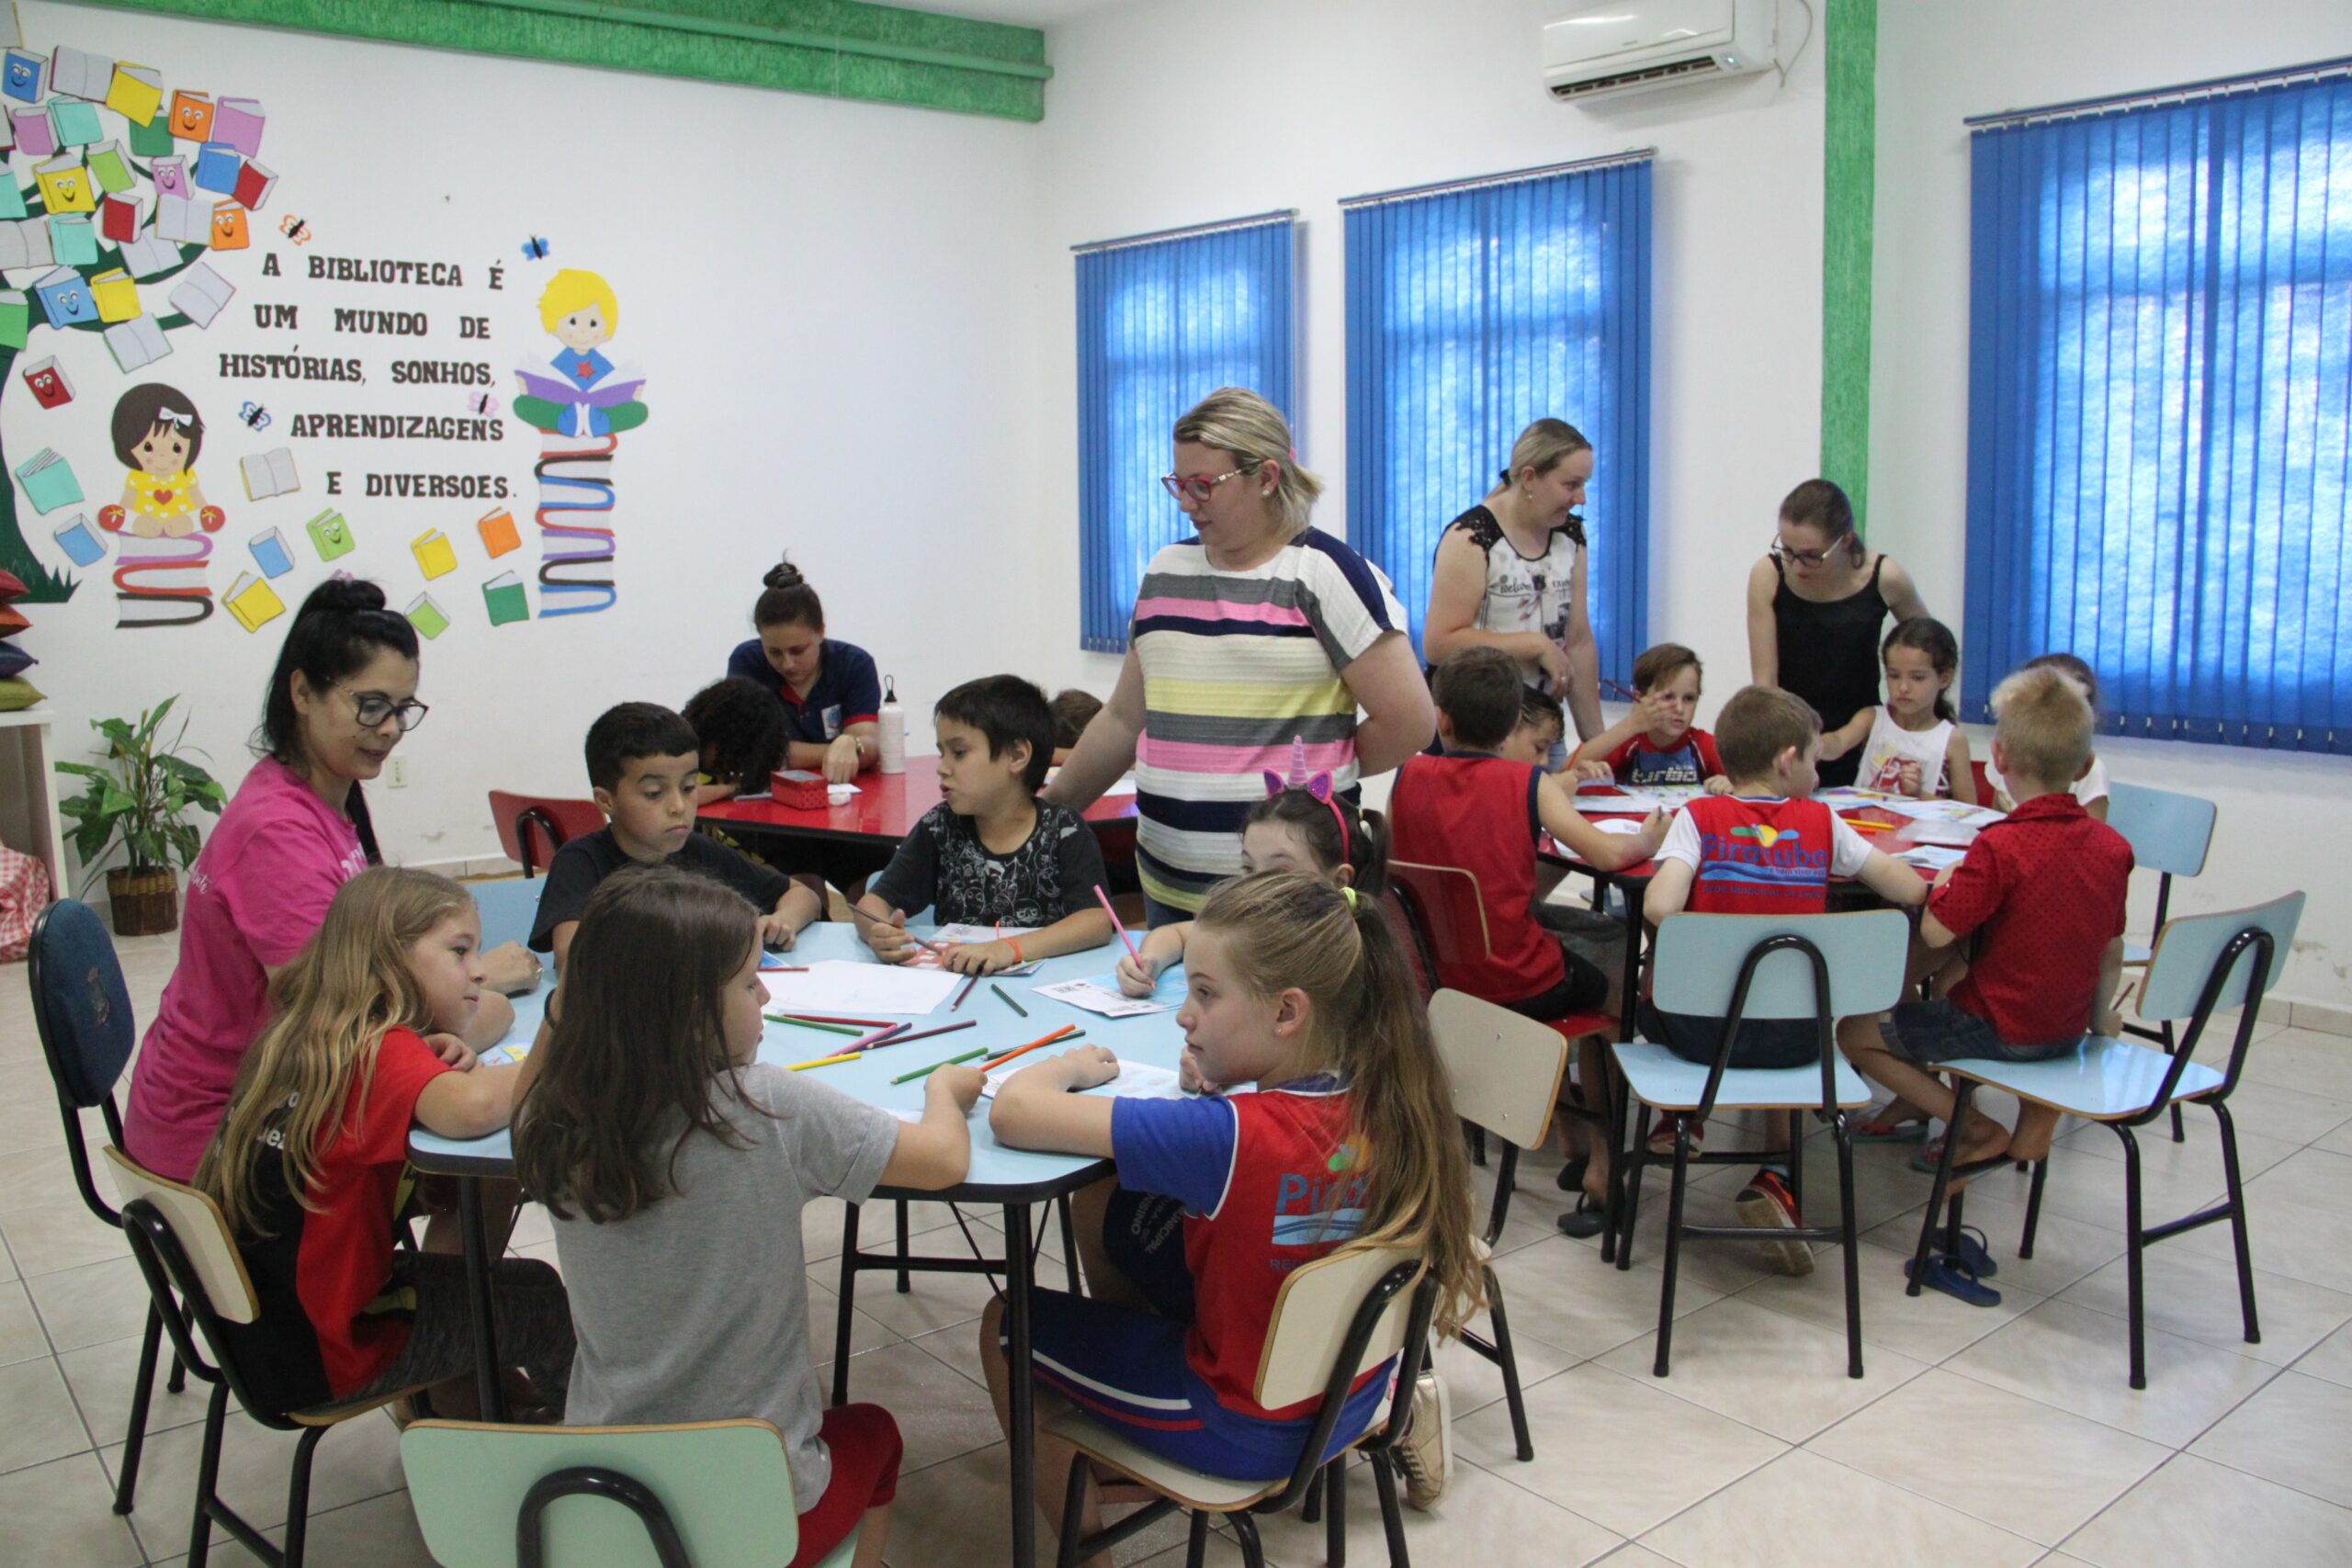 You are currently viewing Inovação: Projeto de Escola Piratubense transforma estudantes em pequenos escritores